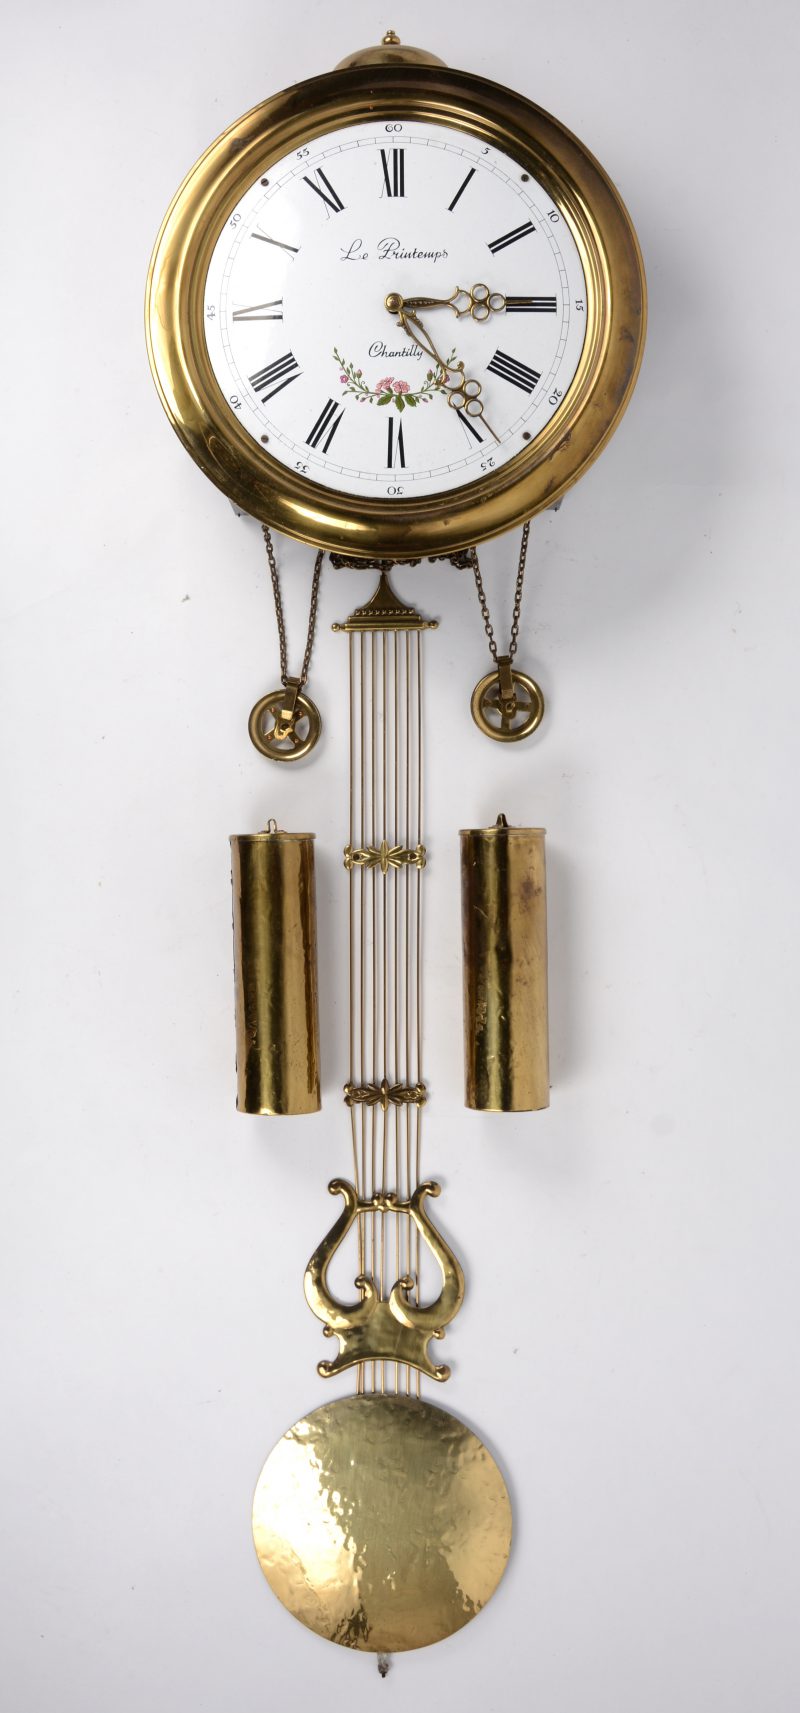 Een Franse stijlklok met een ronde geprofileerde messing rand. De wit emaille wijzerplaat met zwarte Romeinse cijfers. De klok is voorzien van een harpslinger en twee gewichten en met achtdaags uurwerk met belslag.